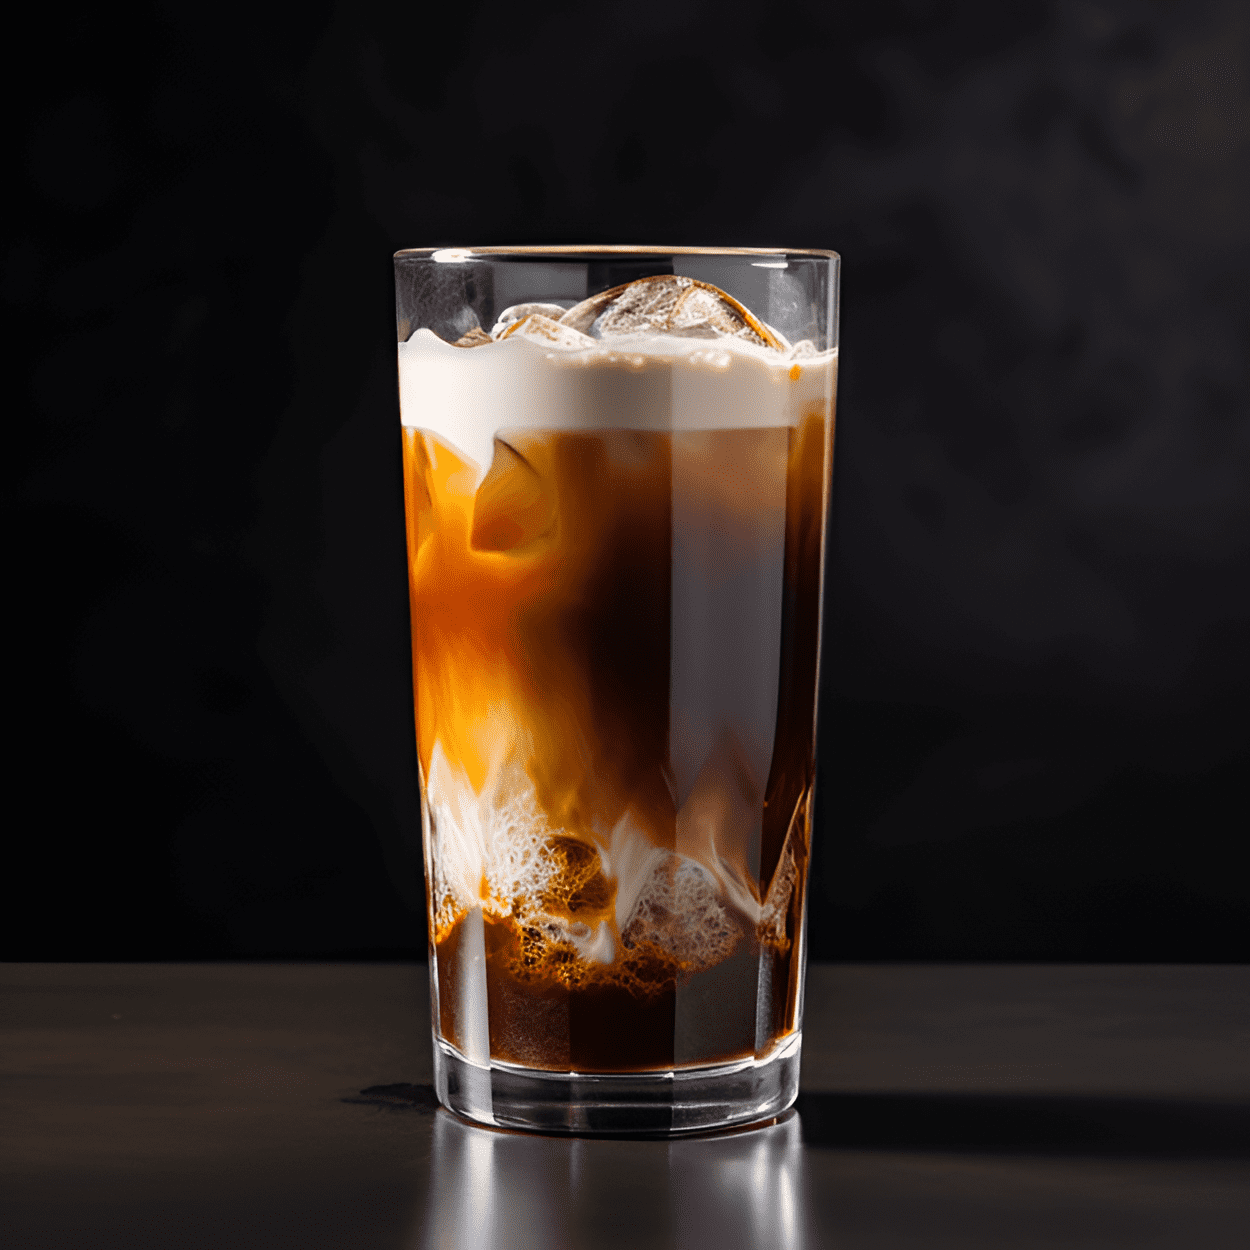 Naruto Starbucks Cóctel Receta - Este cóctel es una deliciosa mezcla de dulce y amargo, con el robusto sabor del café que se mezcla a la perfección con el suave sabor a arroz del sake. La adición de jarabe de vainilla agrega un toque de dulzura que equilibra el fuerte sabor del café.